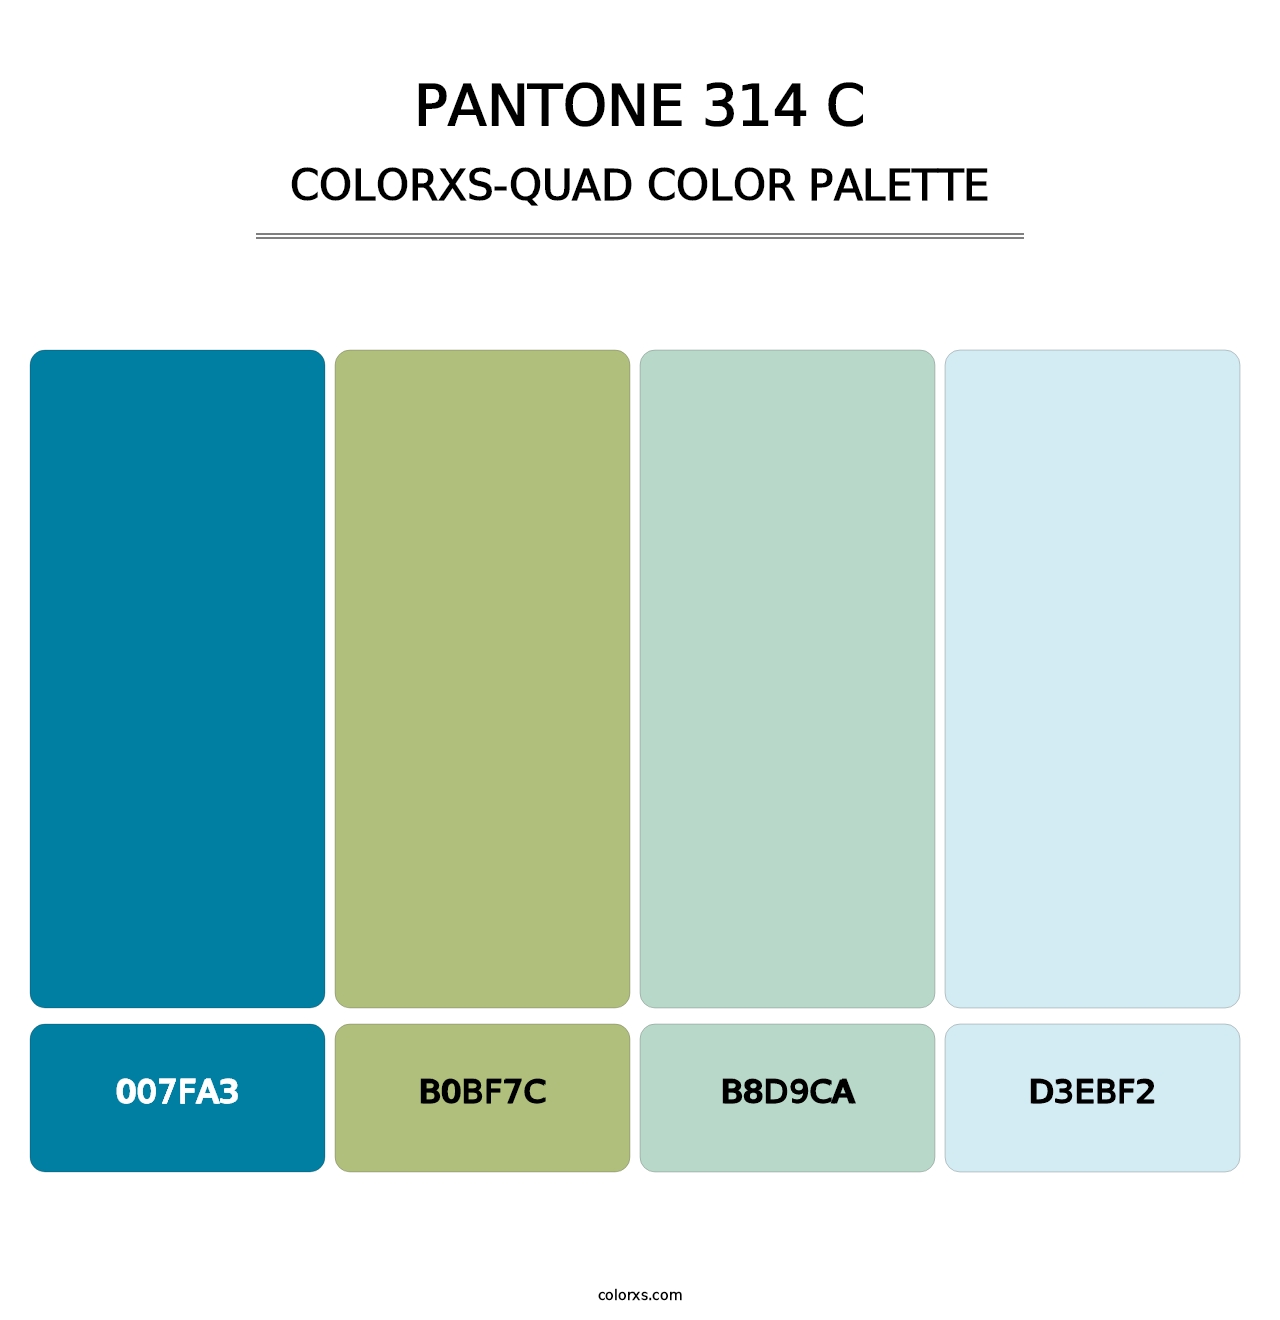 PANTONE 314 C - Colorxs Quad Palette